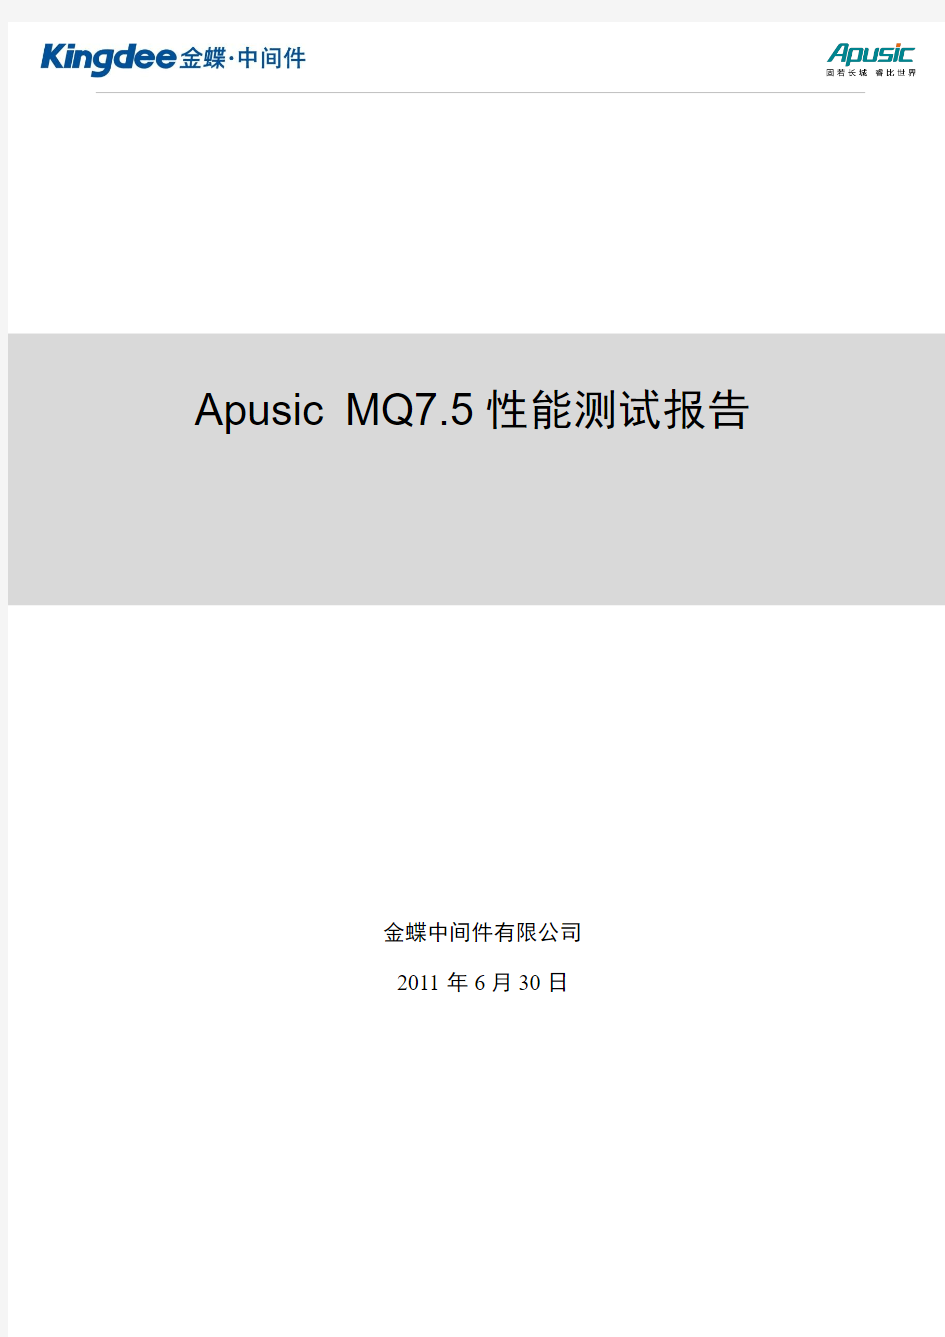 Apusic MQ7.5性能测试报告